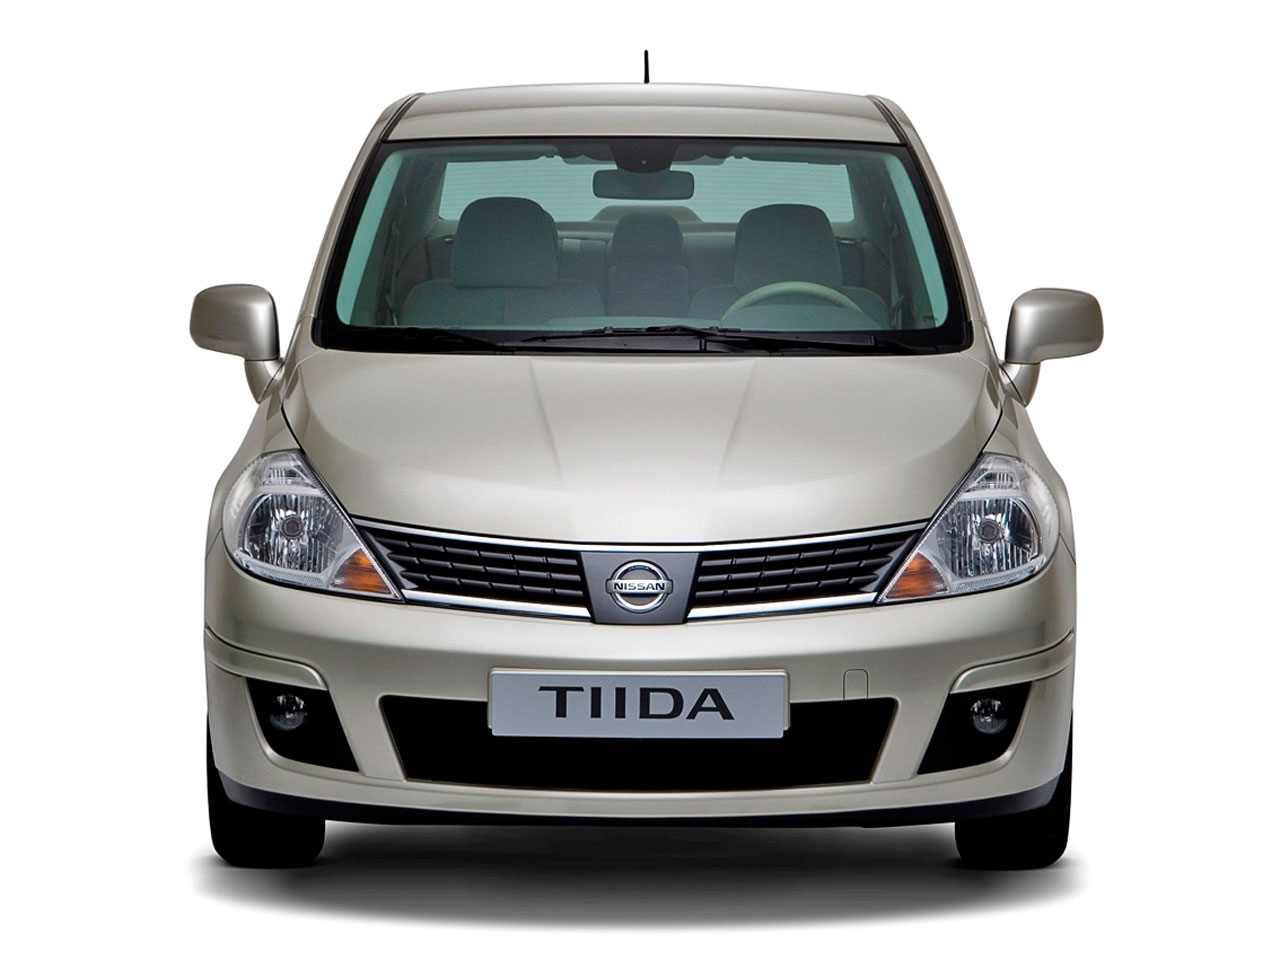 Nissan Tiida - 1280 x 960, 05 из 18